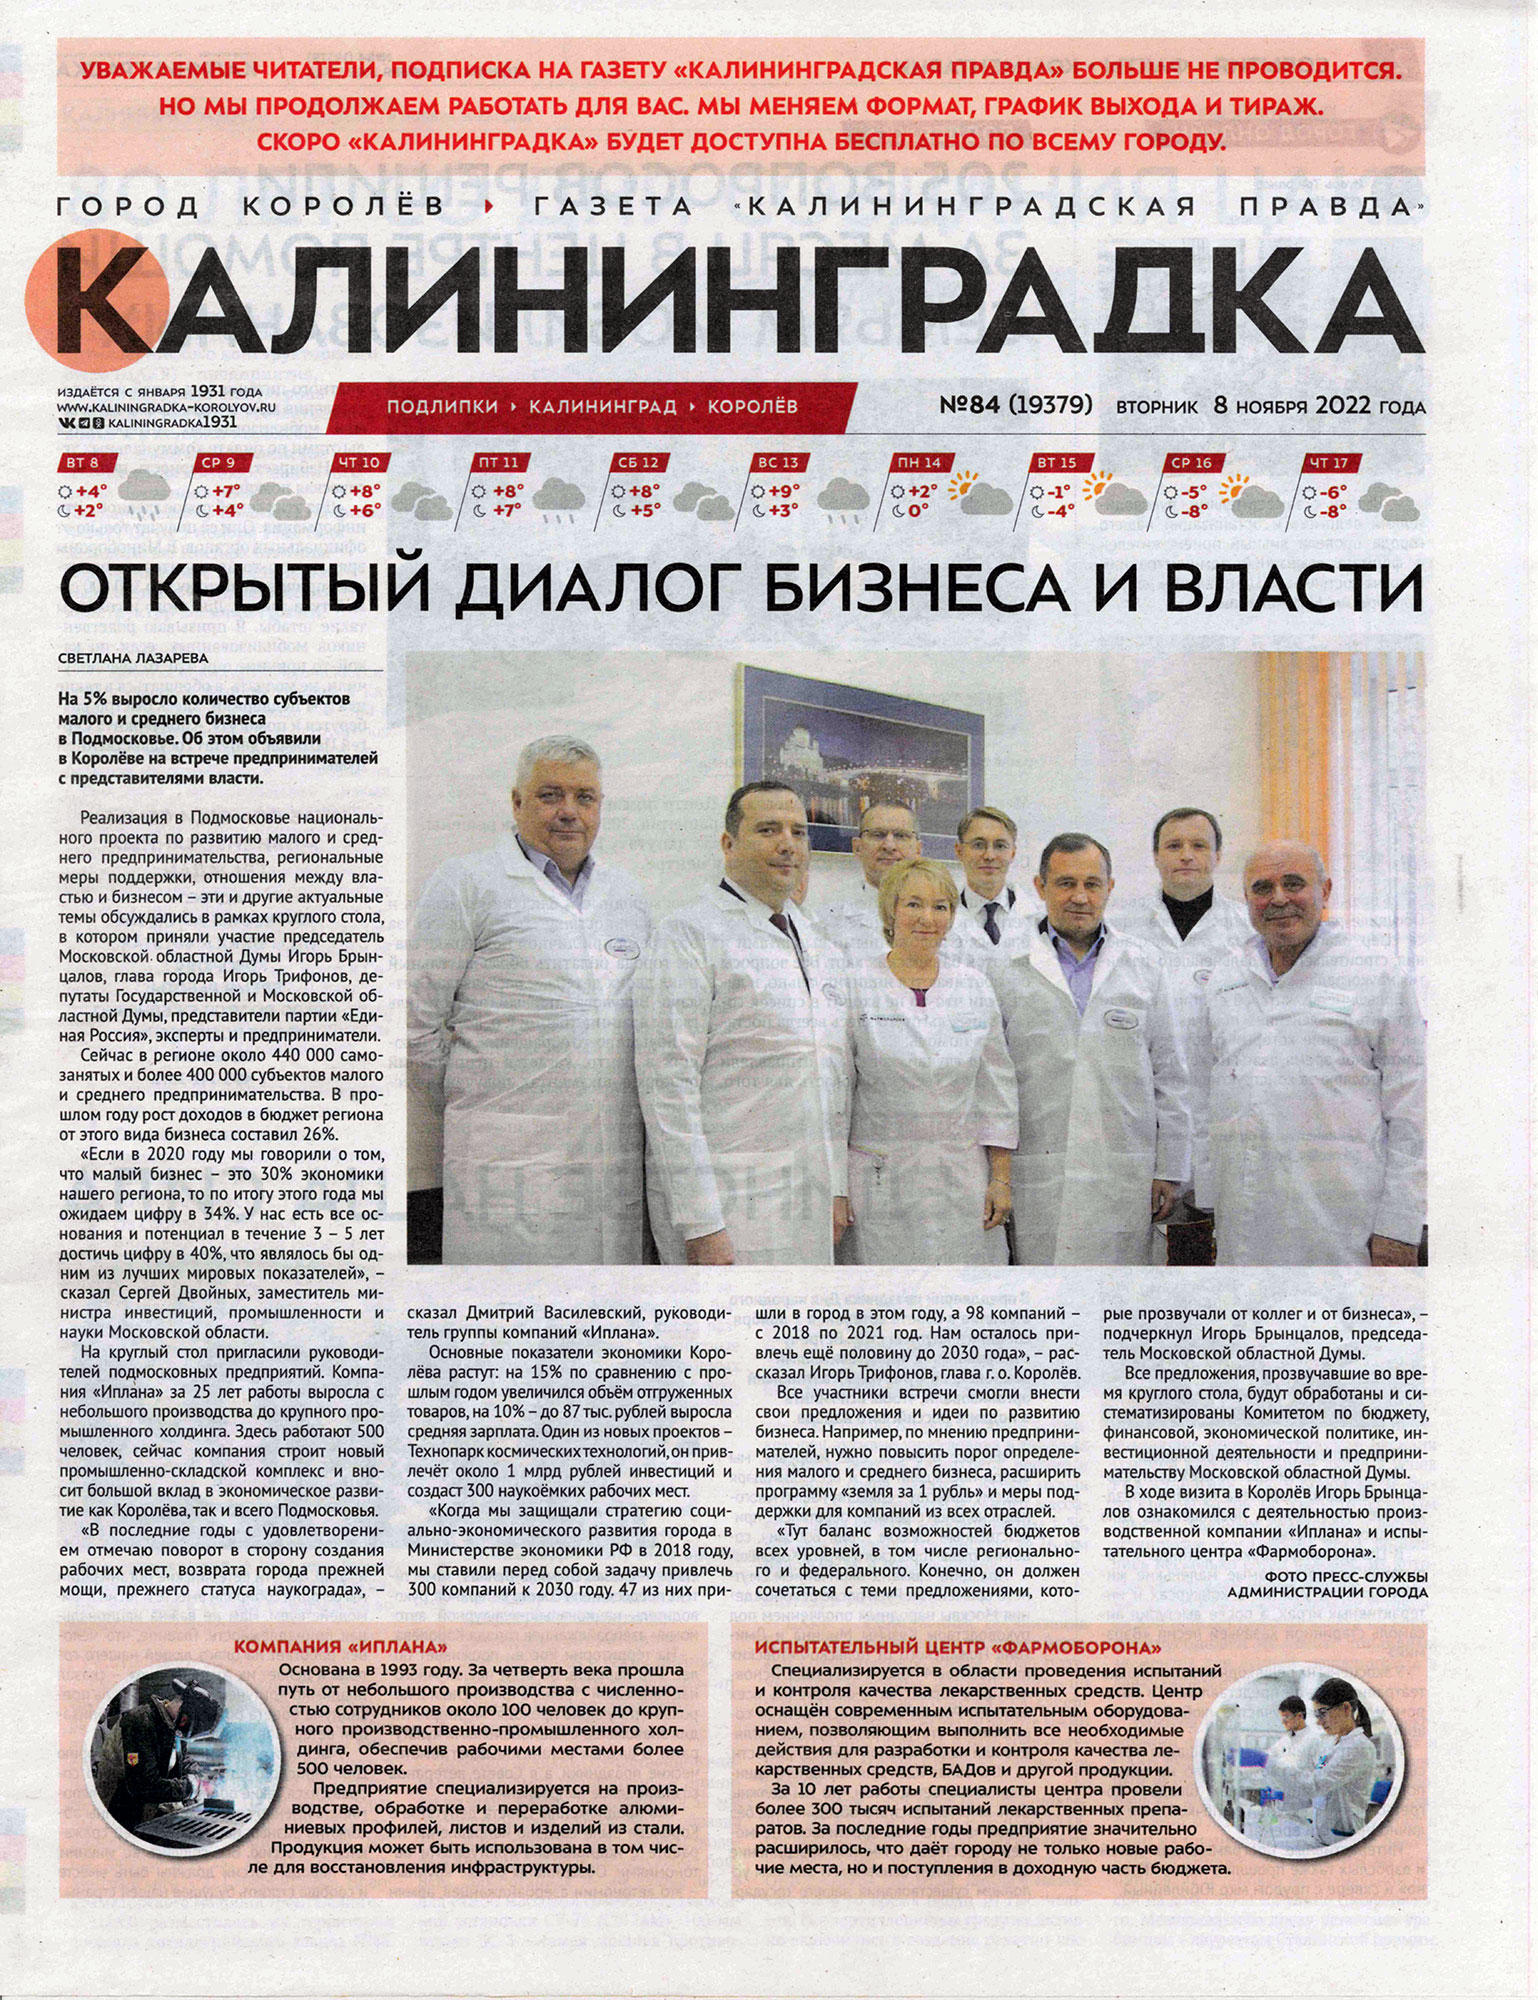 Статья в газете «Калининградская правда»